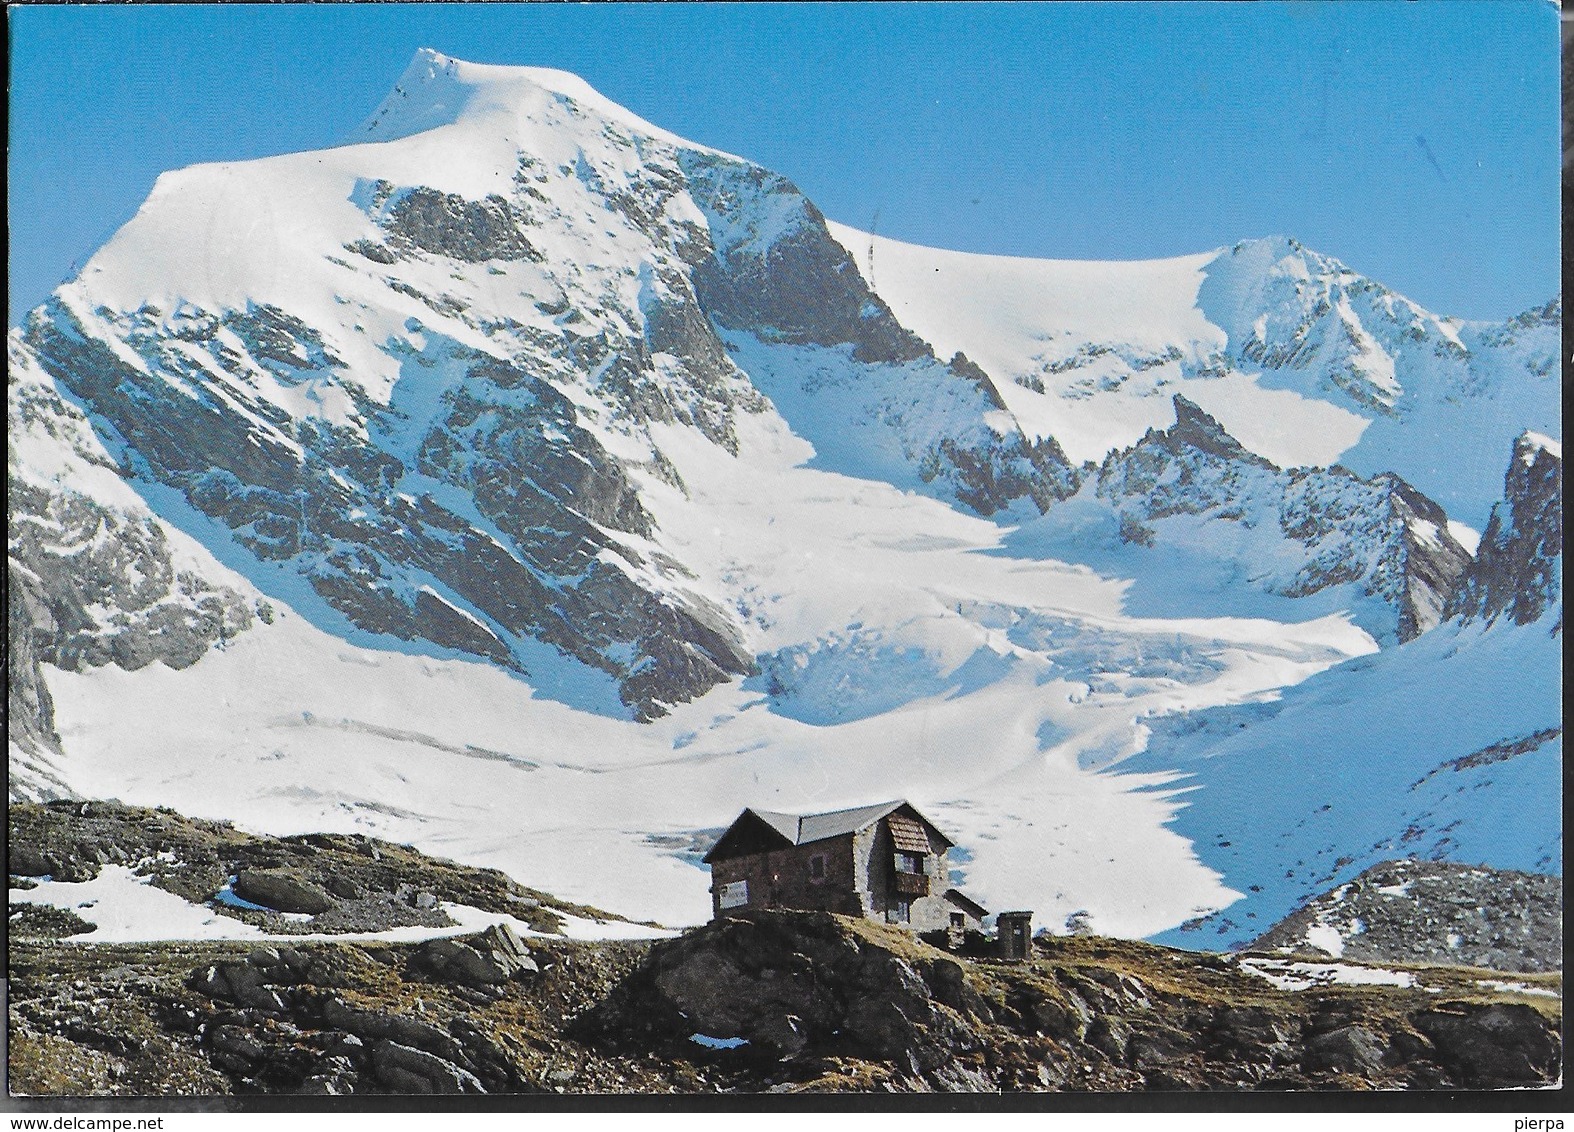 DOLOMITI - RIFUGIO BRIG. TRIDENTINA - TIMBRO DEL RIFUGIO - VIAGGIATA 1988 - Alpinisme